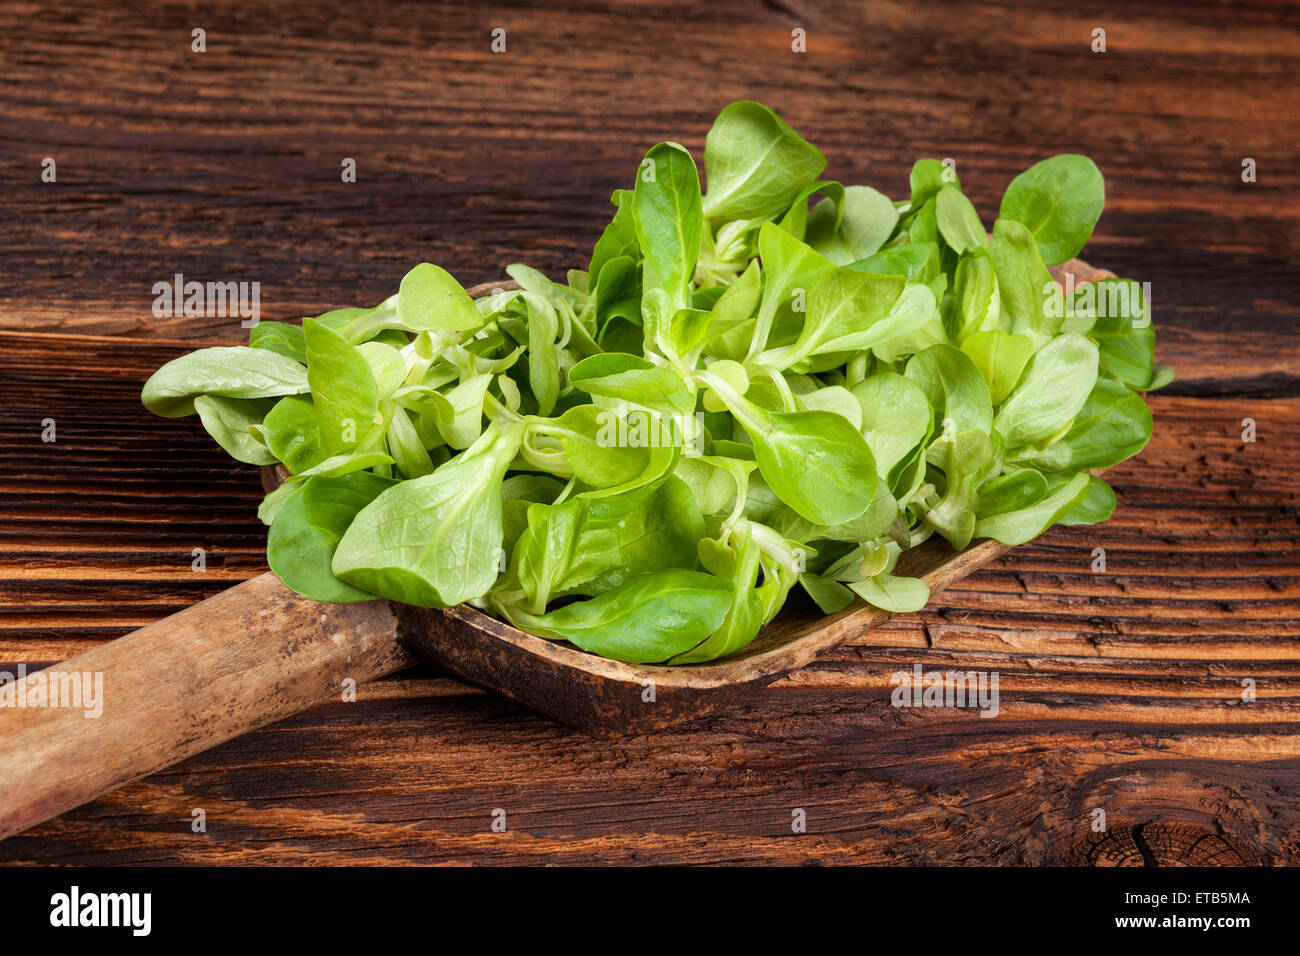 Vert frais salade de mâche sur cuillère en bois sur l'ancienne en bois vintage. Salade fraîche, vintage style rustique de pays Banque D'Images